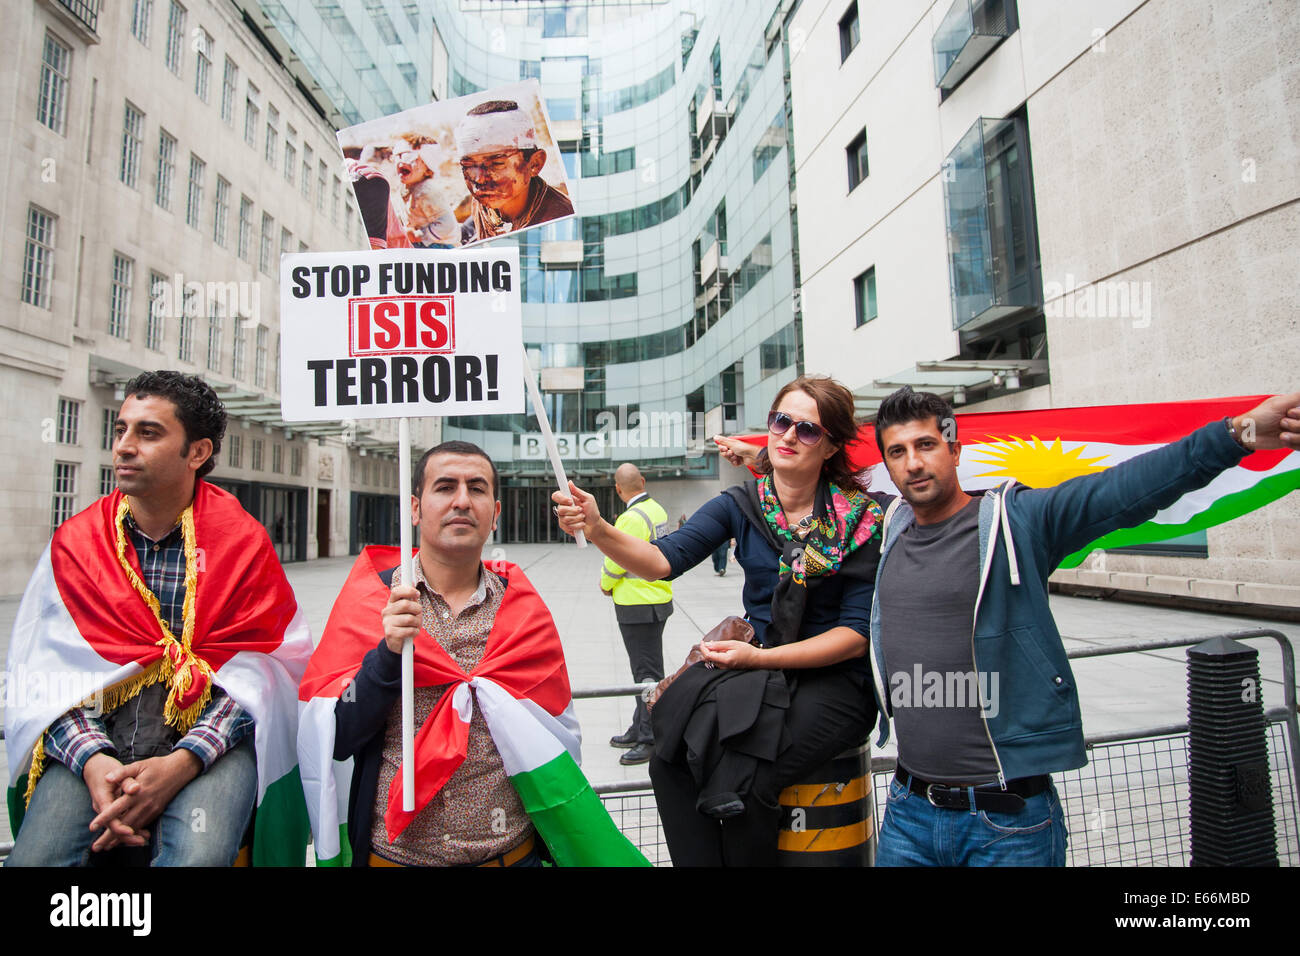 Londres, Royaume-Uni. 16 août, 2014. Des centaines de kurdes et leurs partisans se réunissent en dehors de la BBC Broadcasting House à se préoccuper de l'augmentation de la violence d'ISIS (État islamique en Iraq et en Syrie). Credit : Chaussée de presse Photos/Alamy Live News Banque D'Images